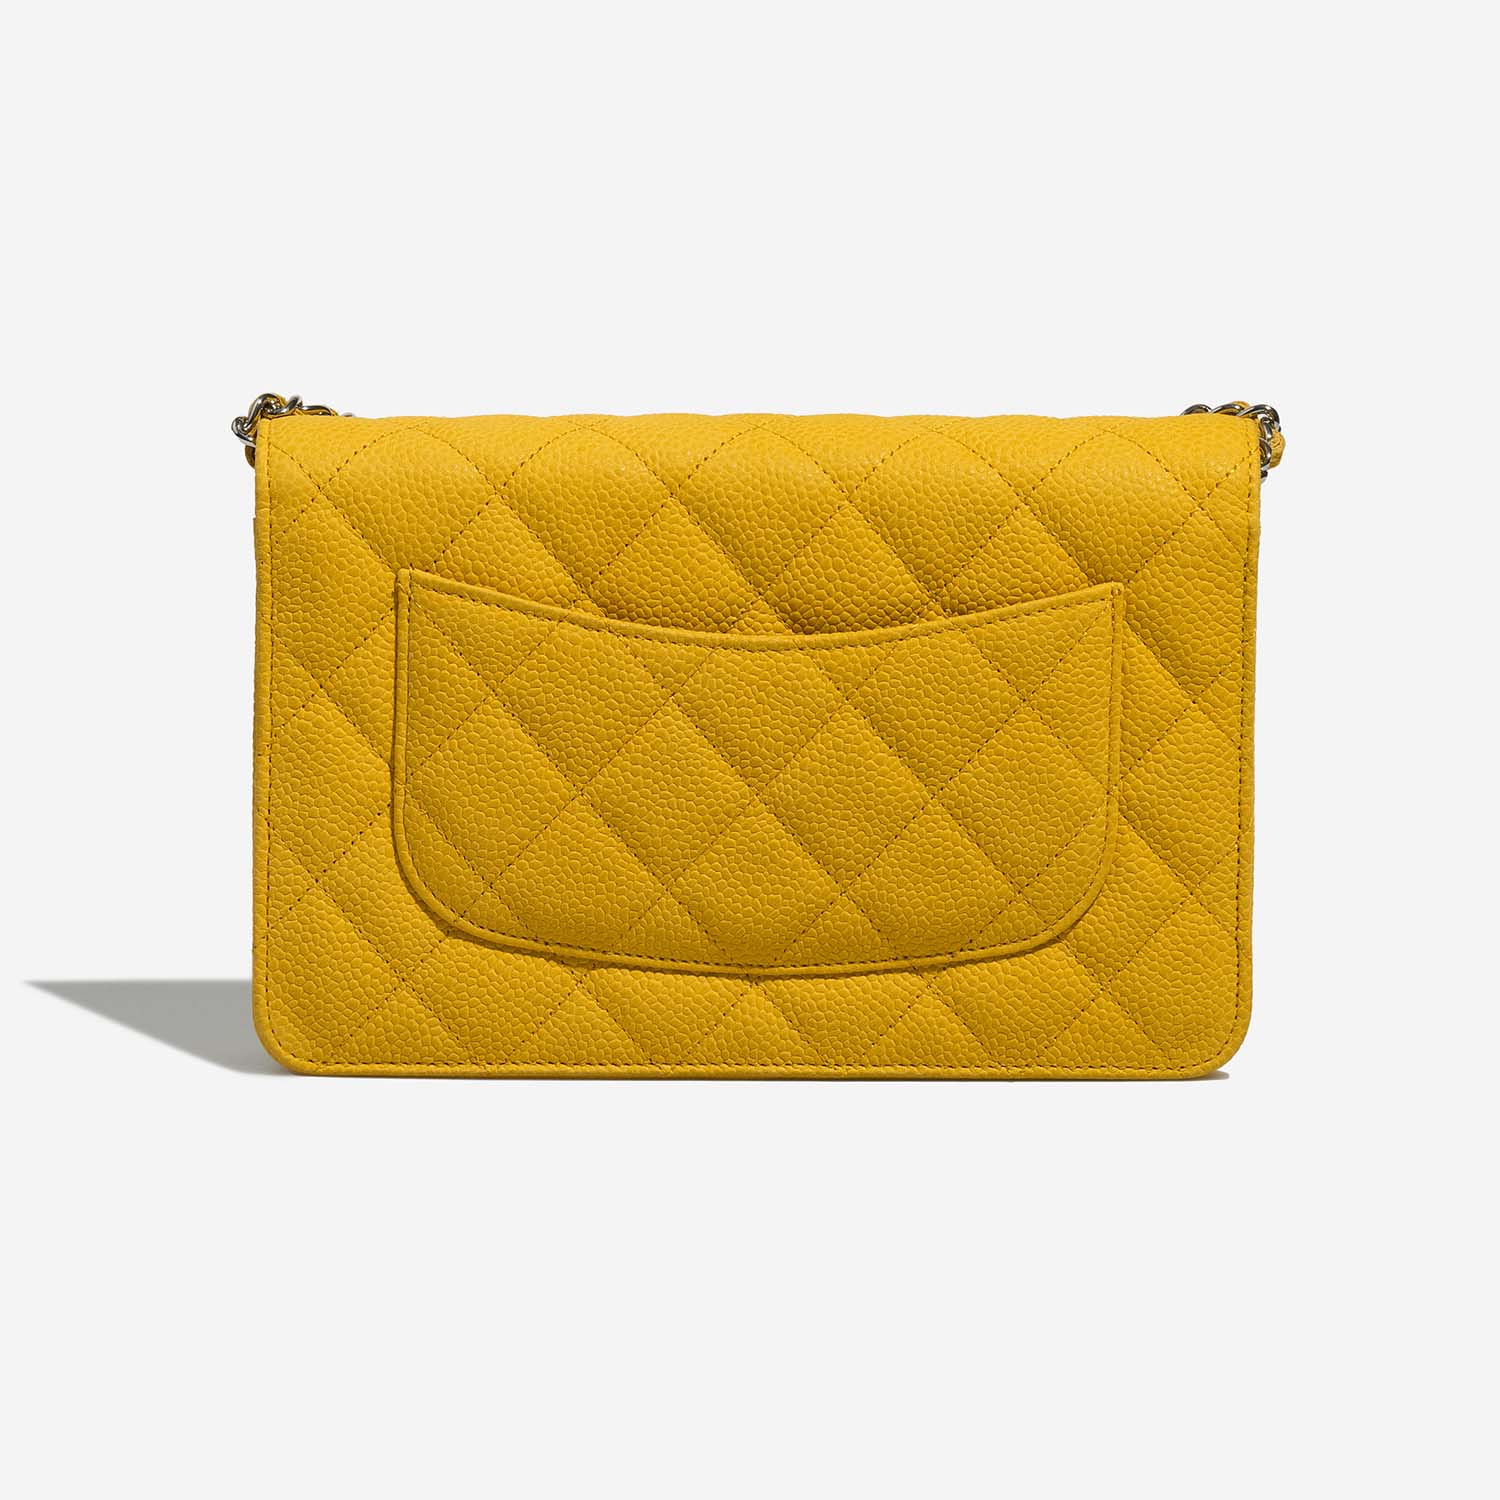 Chanel Timeless WOC Yellow Back | Verkaufen Sie Ihre Designer-Tasche auf Saclab.com